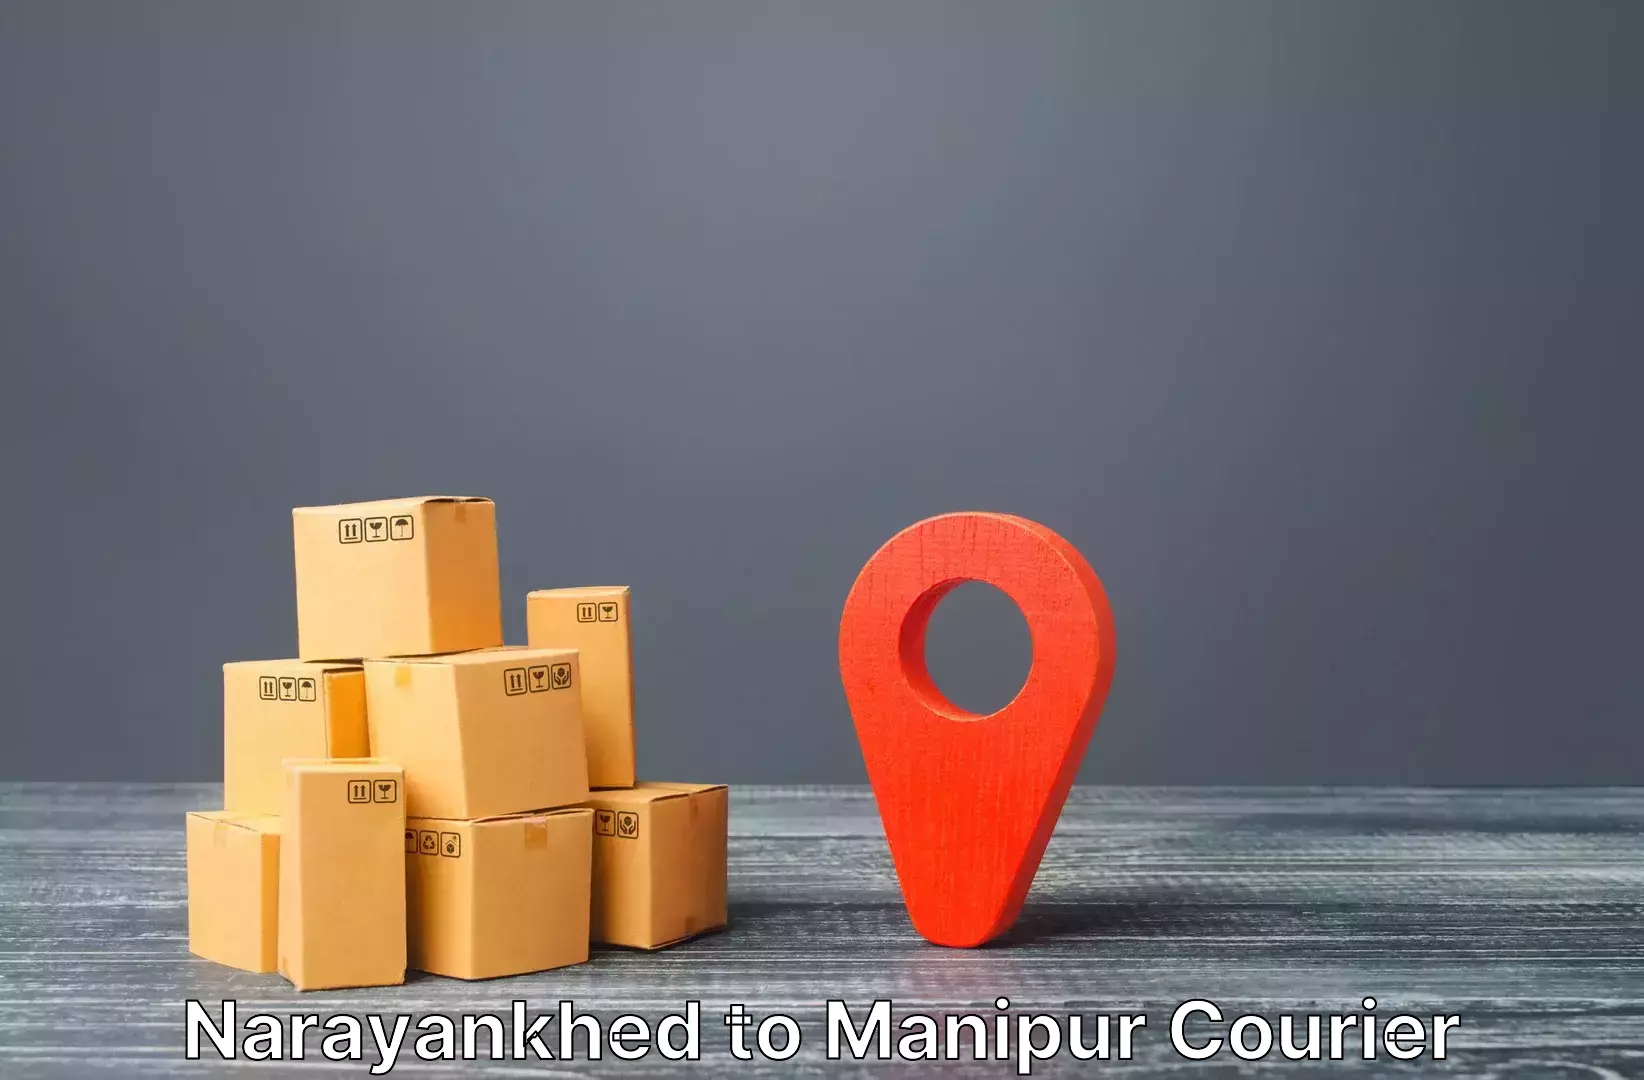 Luggage transit service Narayankhed to Manipur